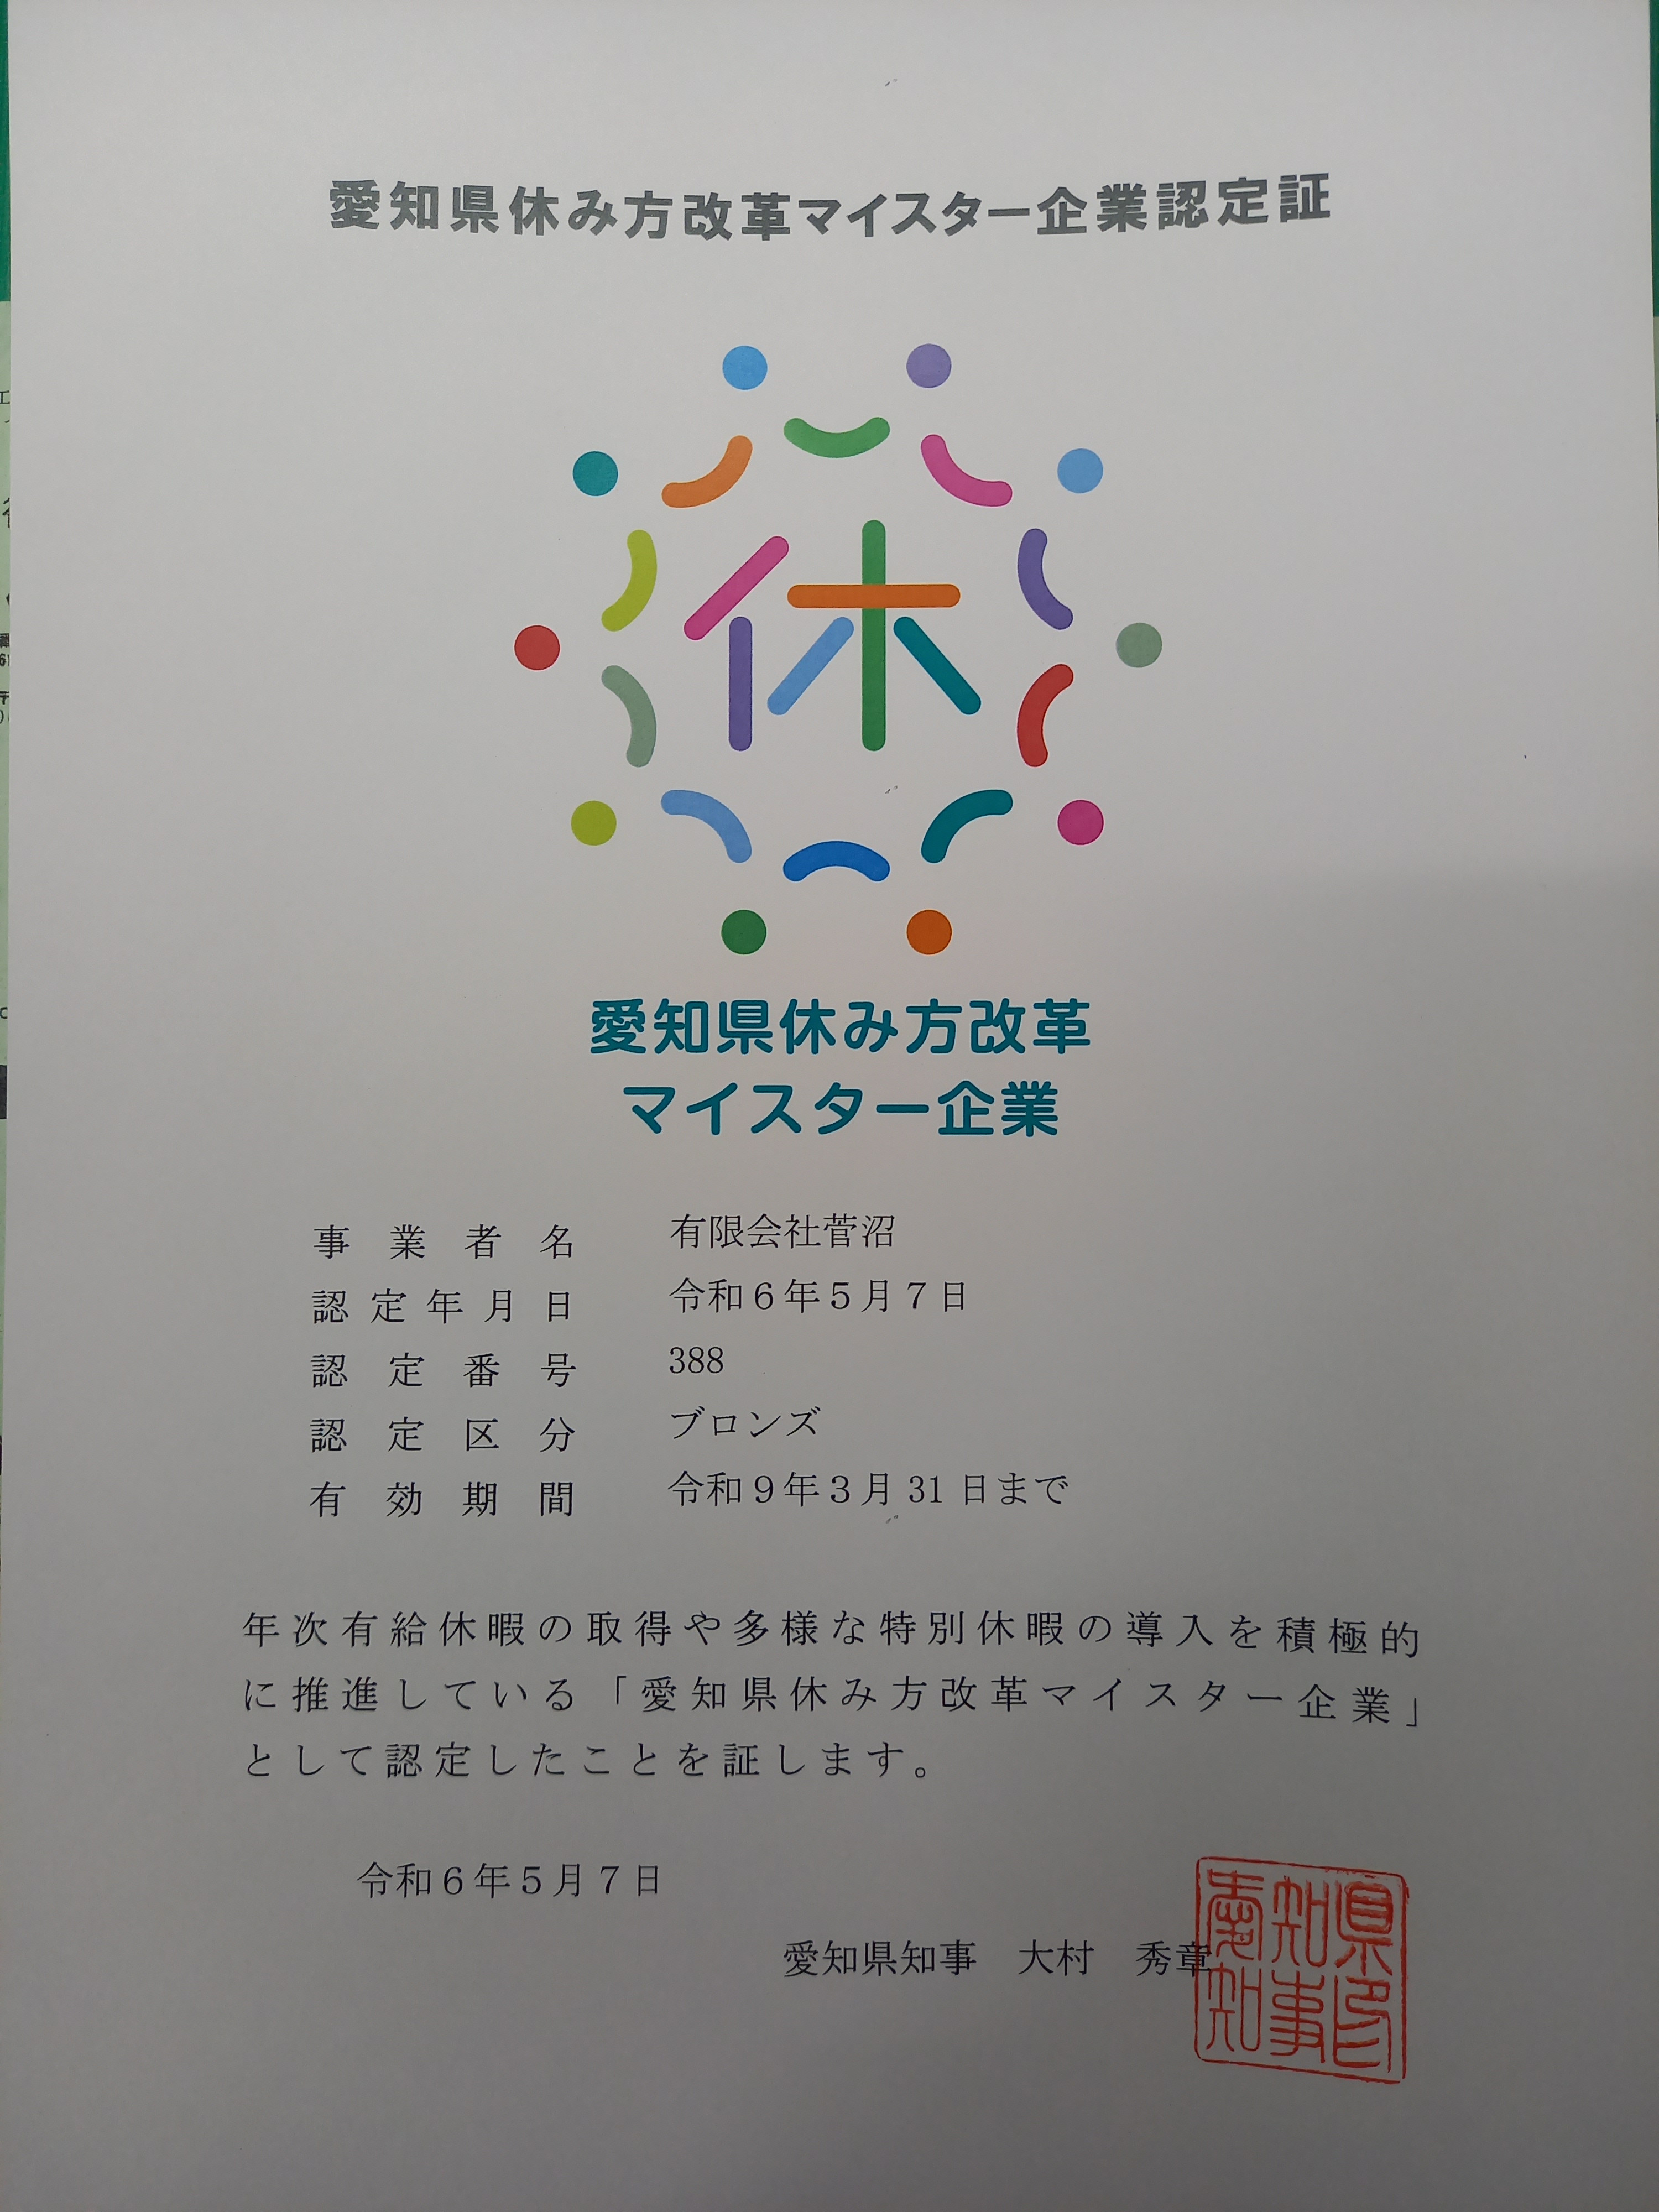 「愛知県休み方改革マイスター企業」に認定されました。